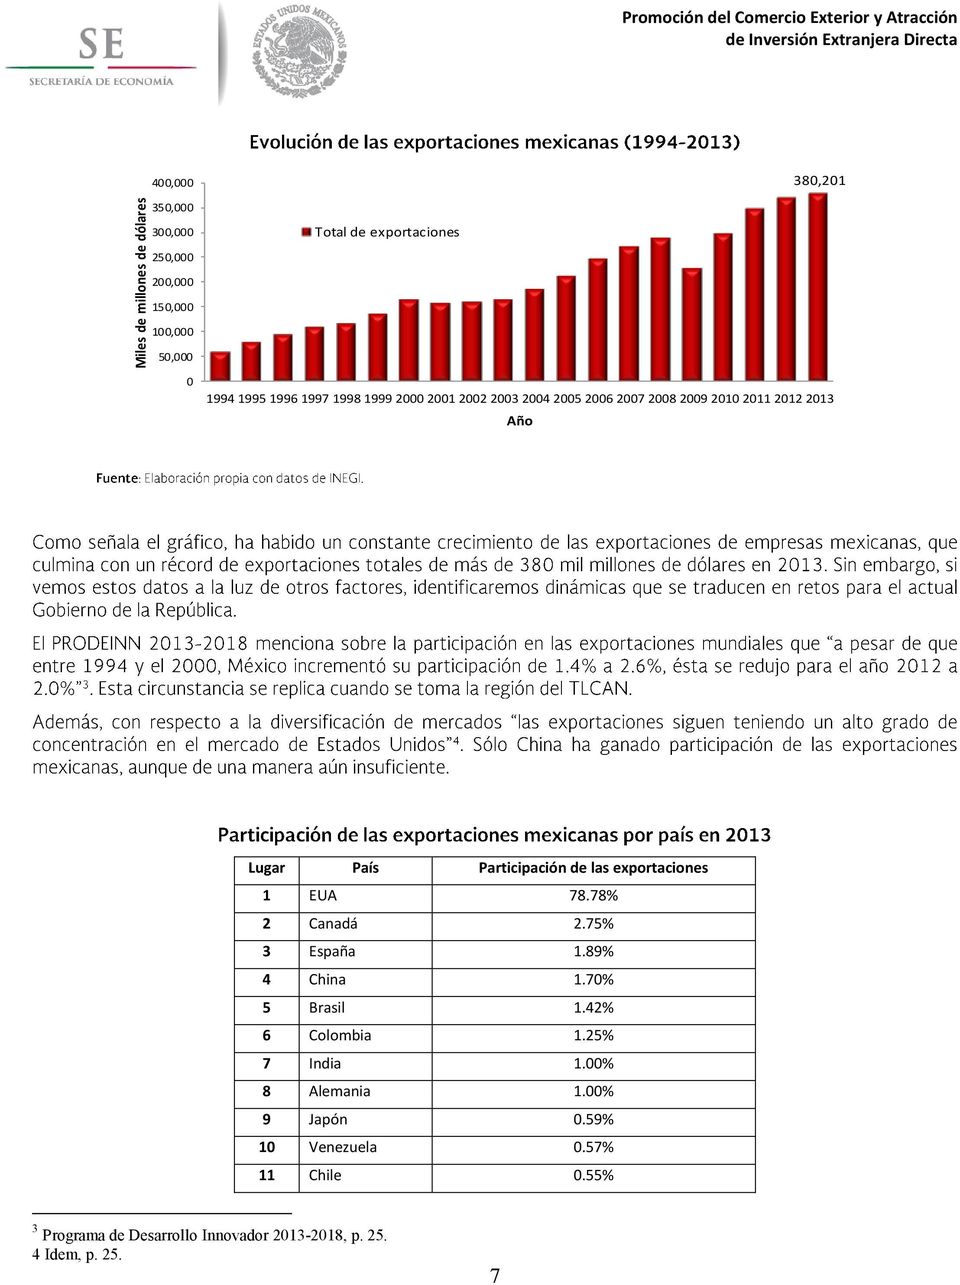 Participación de las exportaciones 1 EUA 78.78% 2 Canadá 2.75% 3 España 1.89% 4 China 1.70% 5 Brasil 1.42% 6 Colombia 1.